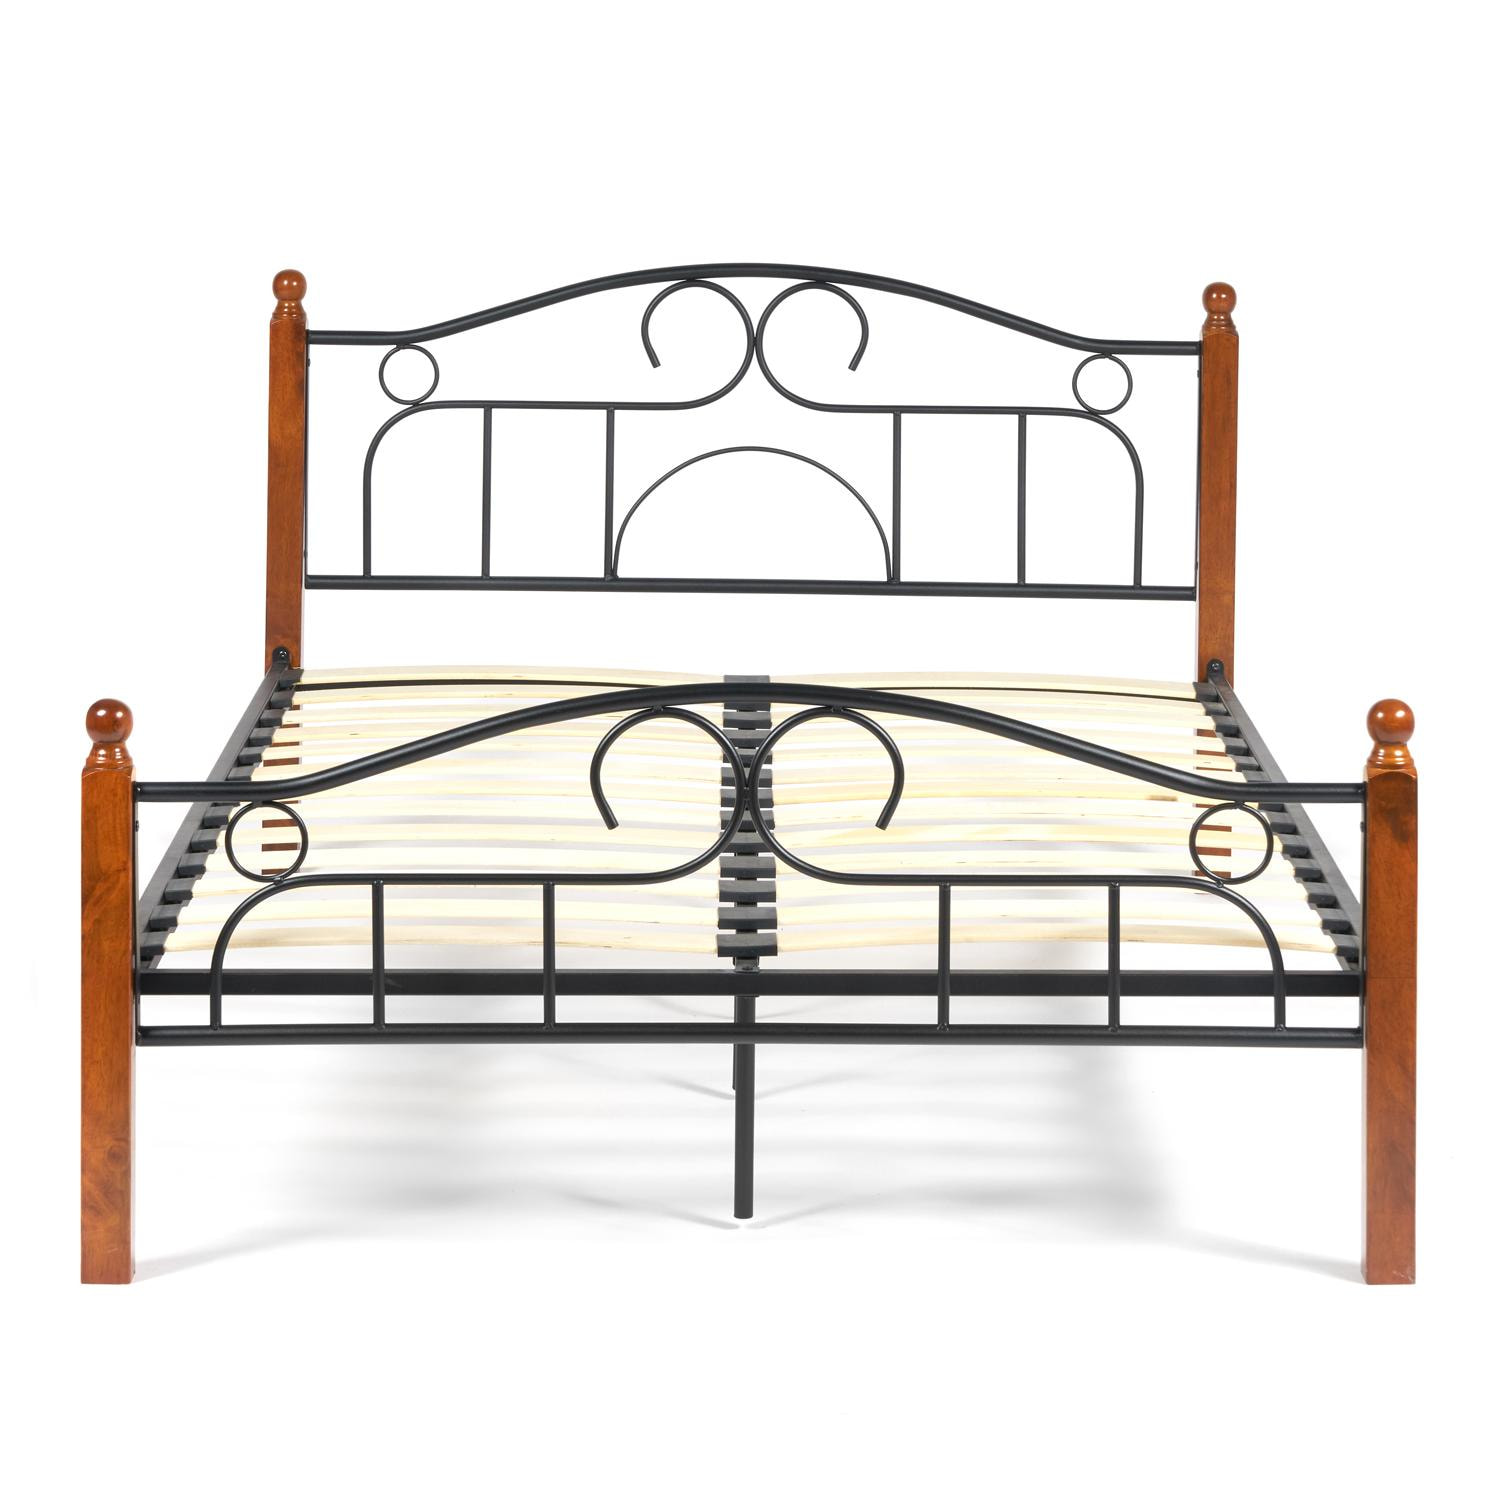 Кровать AT-808 Wood slat base дерево гевея/металл, 140*200 см (Double bed), красный дуб/черный